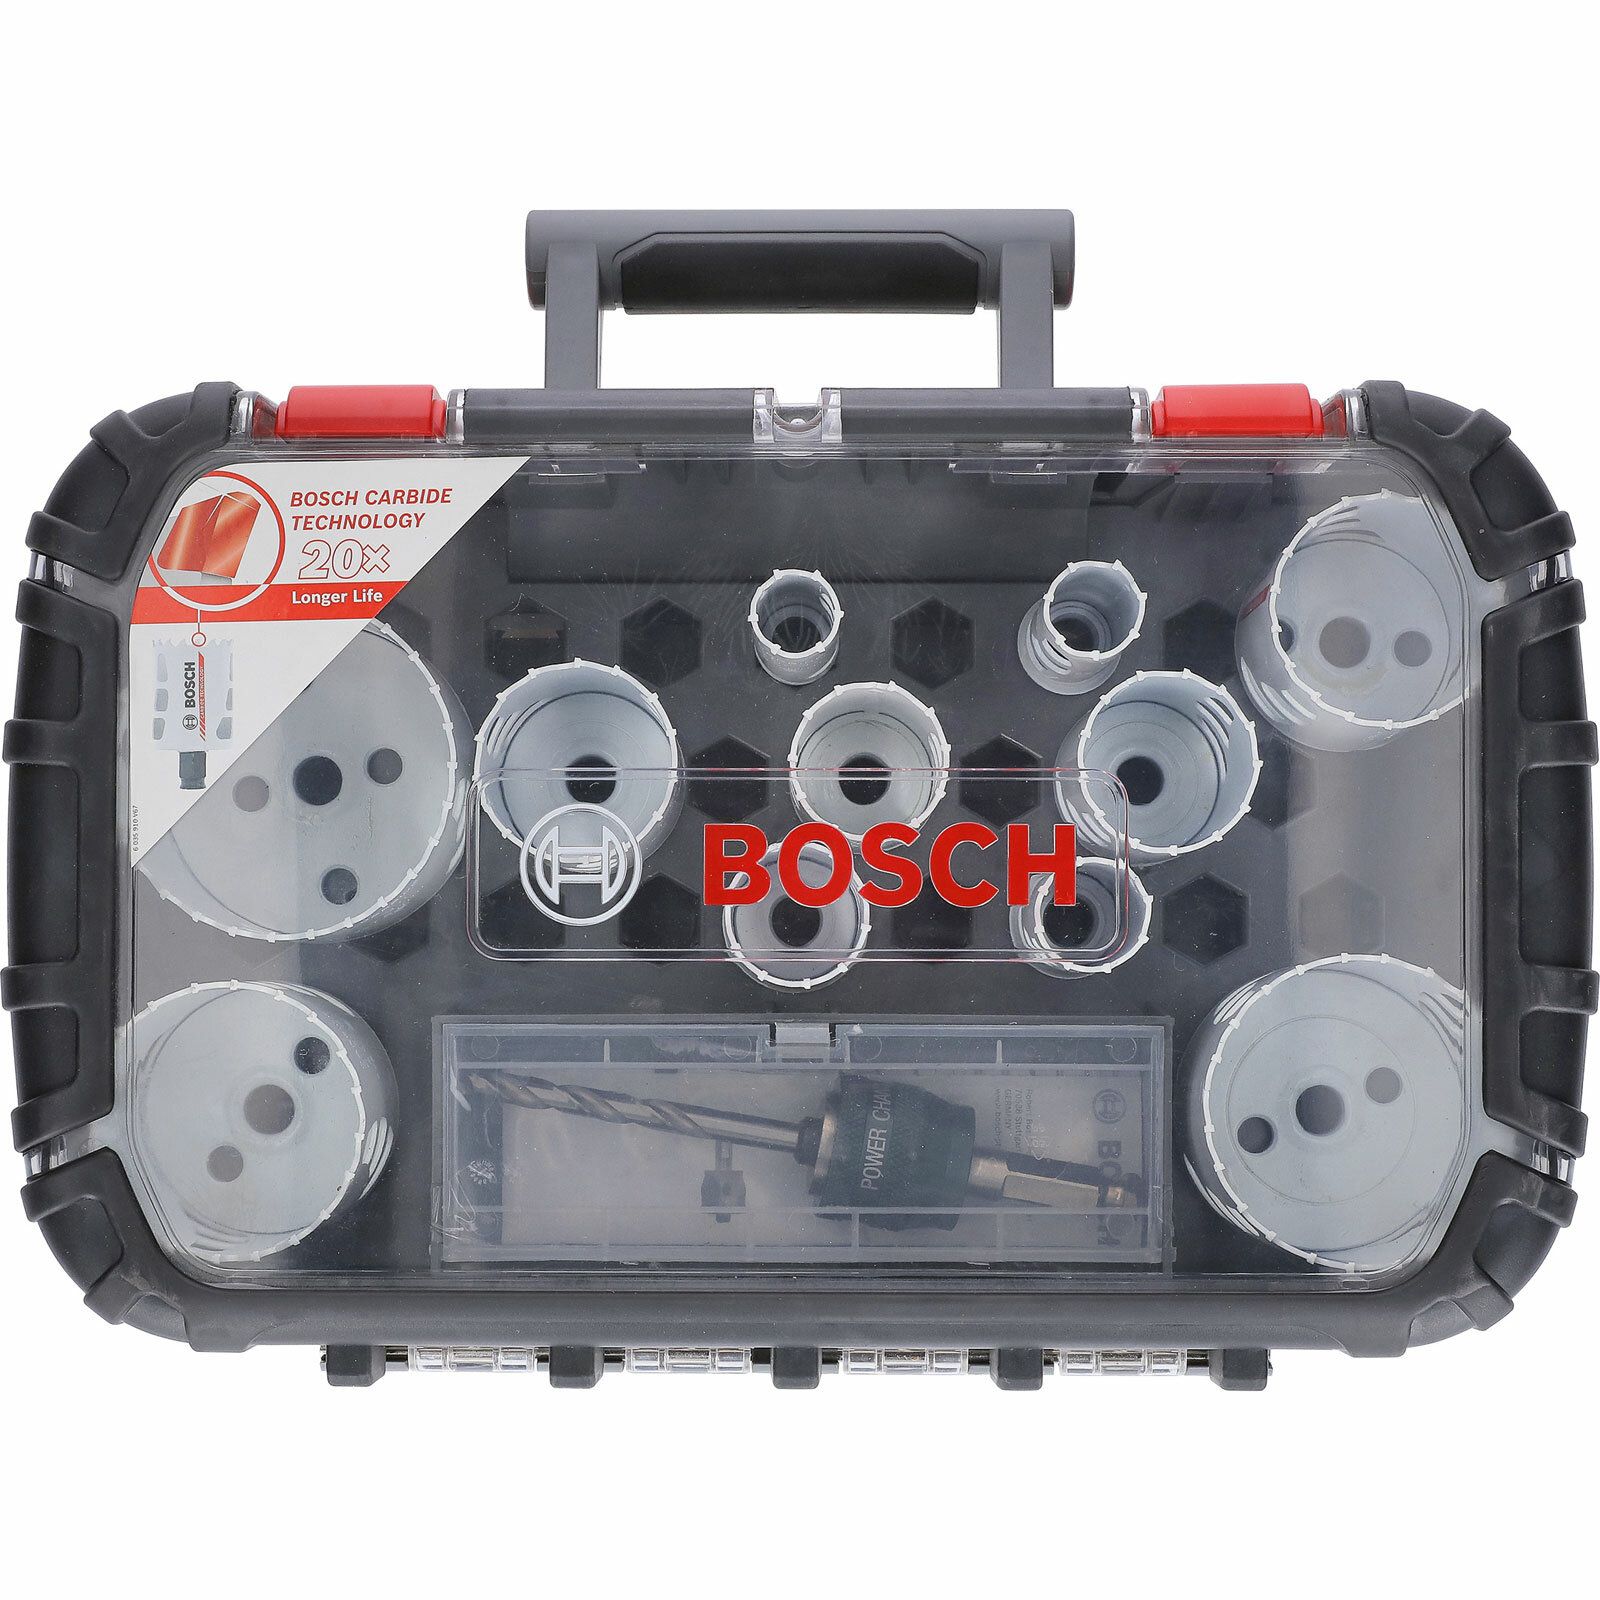 Универсальный набор твердосплавных коронок Bosch Endurance for Heavy Duty, 13 шт. (2608594186)